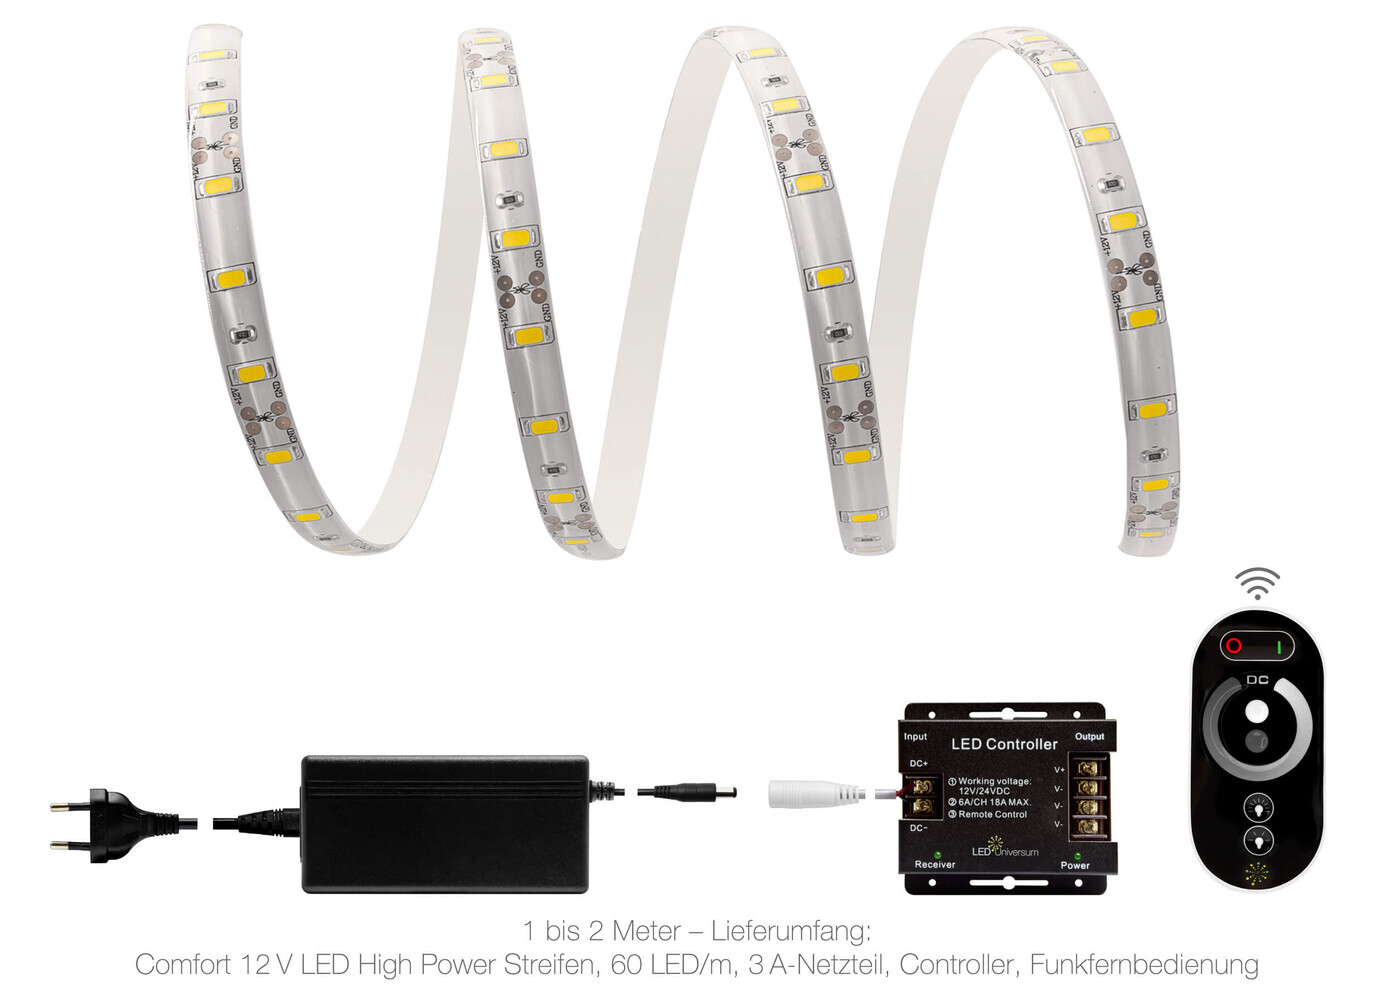 Hochwertiger LED Streifen mit hoher Leistung und warmweißem Licht von LED Universum